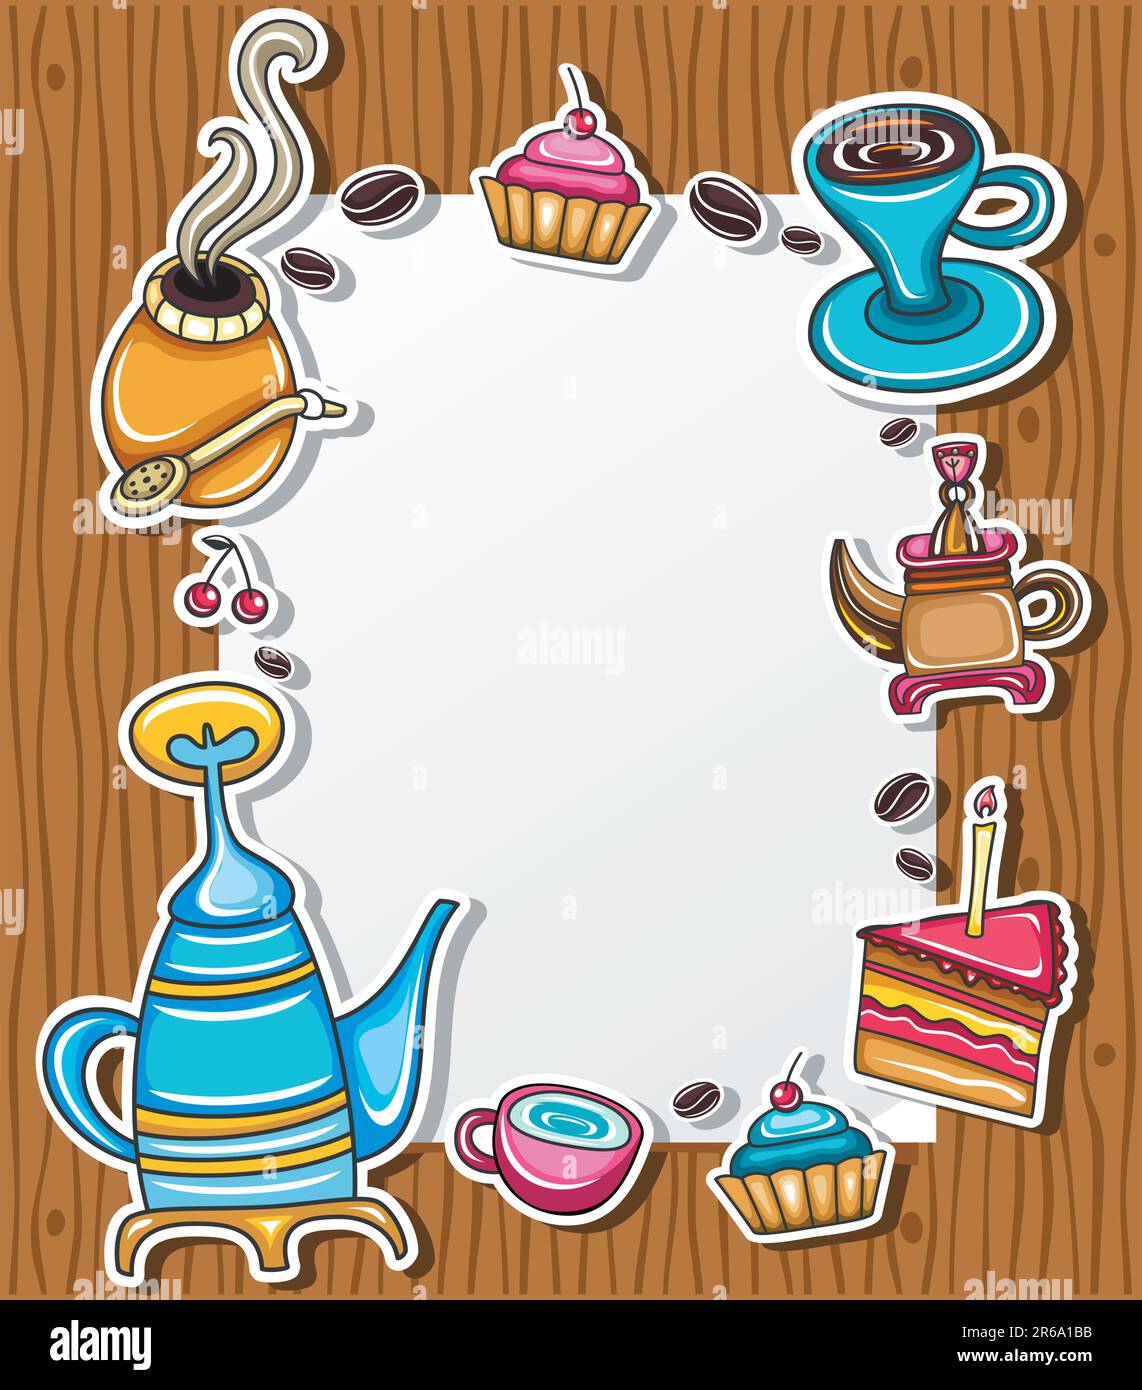 Cadre de grunge mignon avec café, thé, gâteau, symboles yerba mate, isolé sur fond de bois 3. Illustration de Vecteur